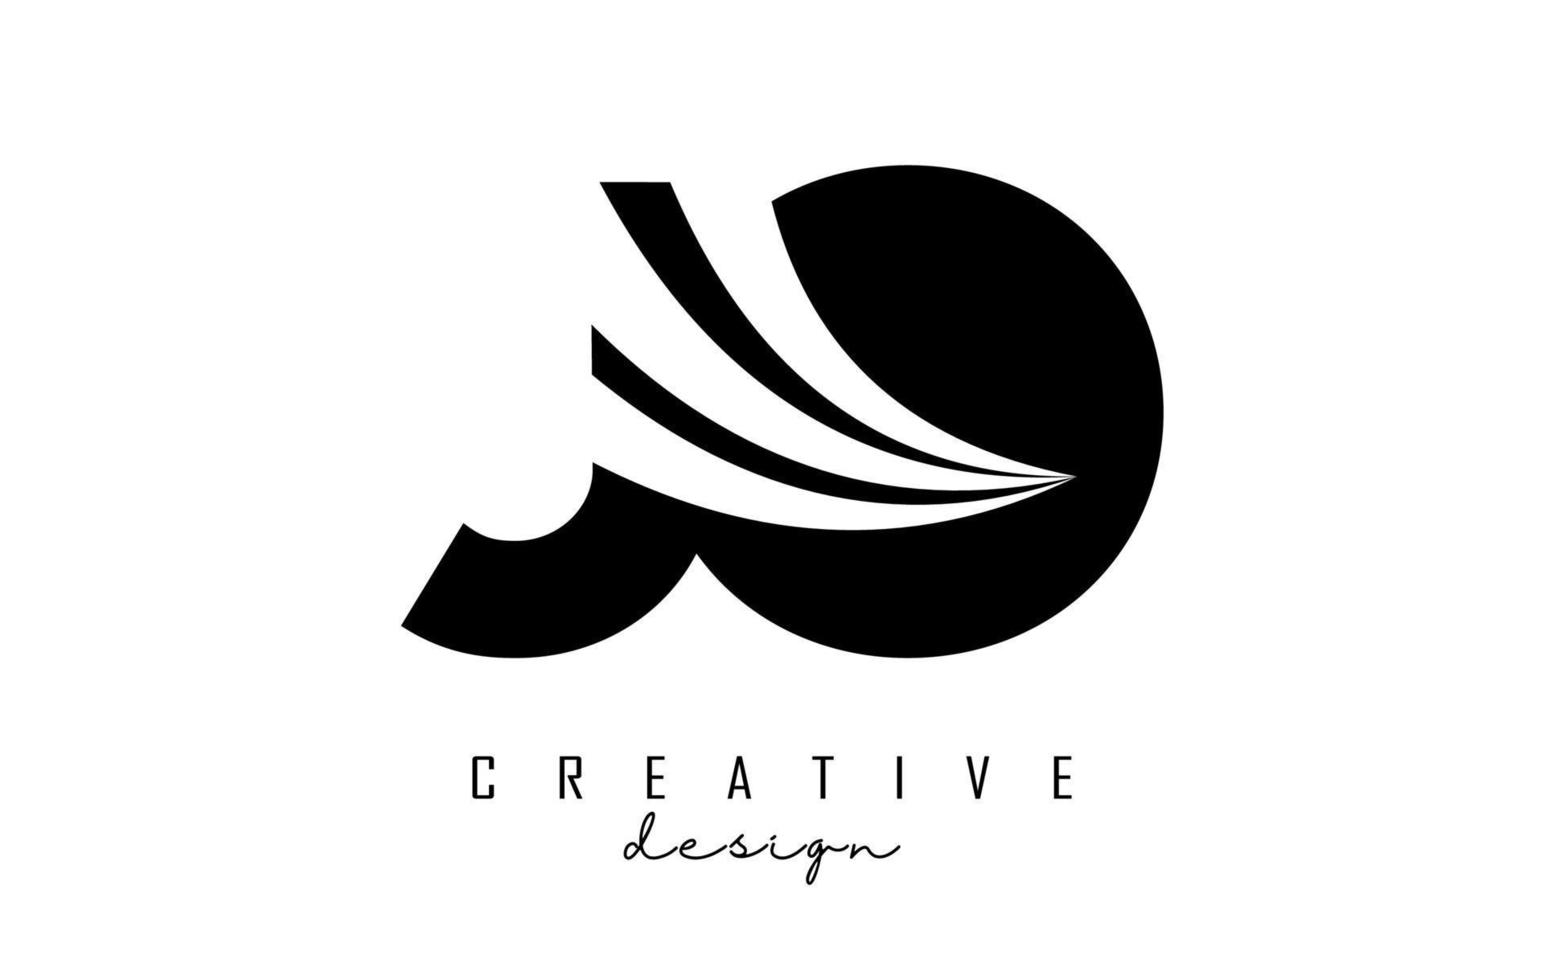 kreative schwarze buchstaben jo jo logo mit führenden linien und straßenkonzeptdesign. Buchstaben mit geometrischem Design. vektor